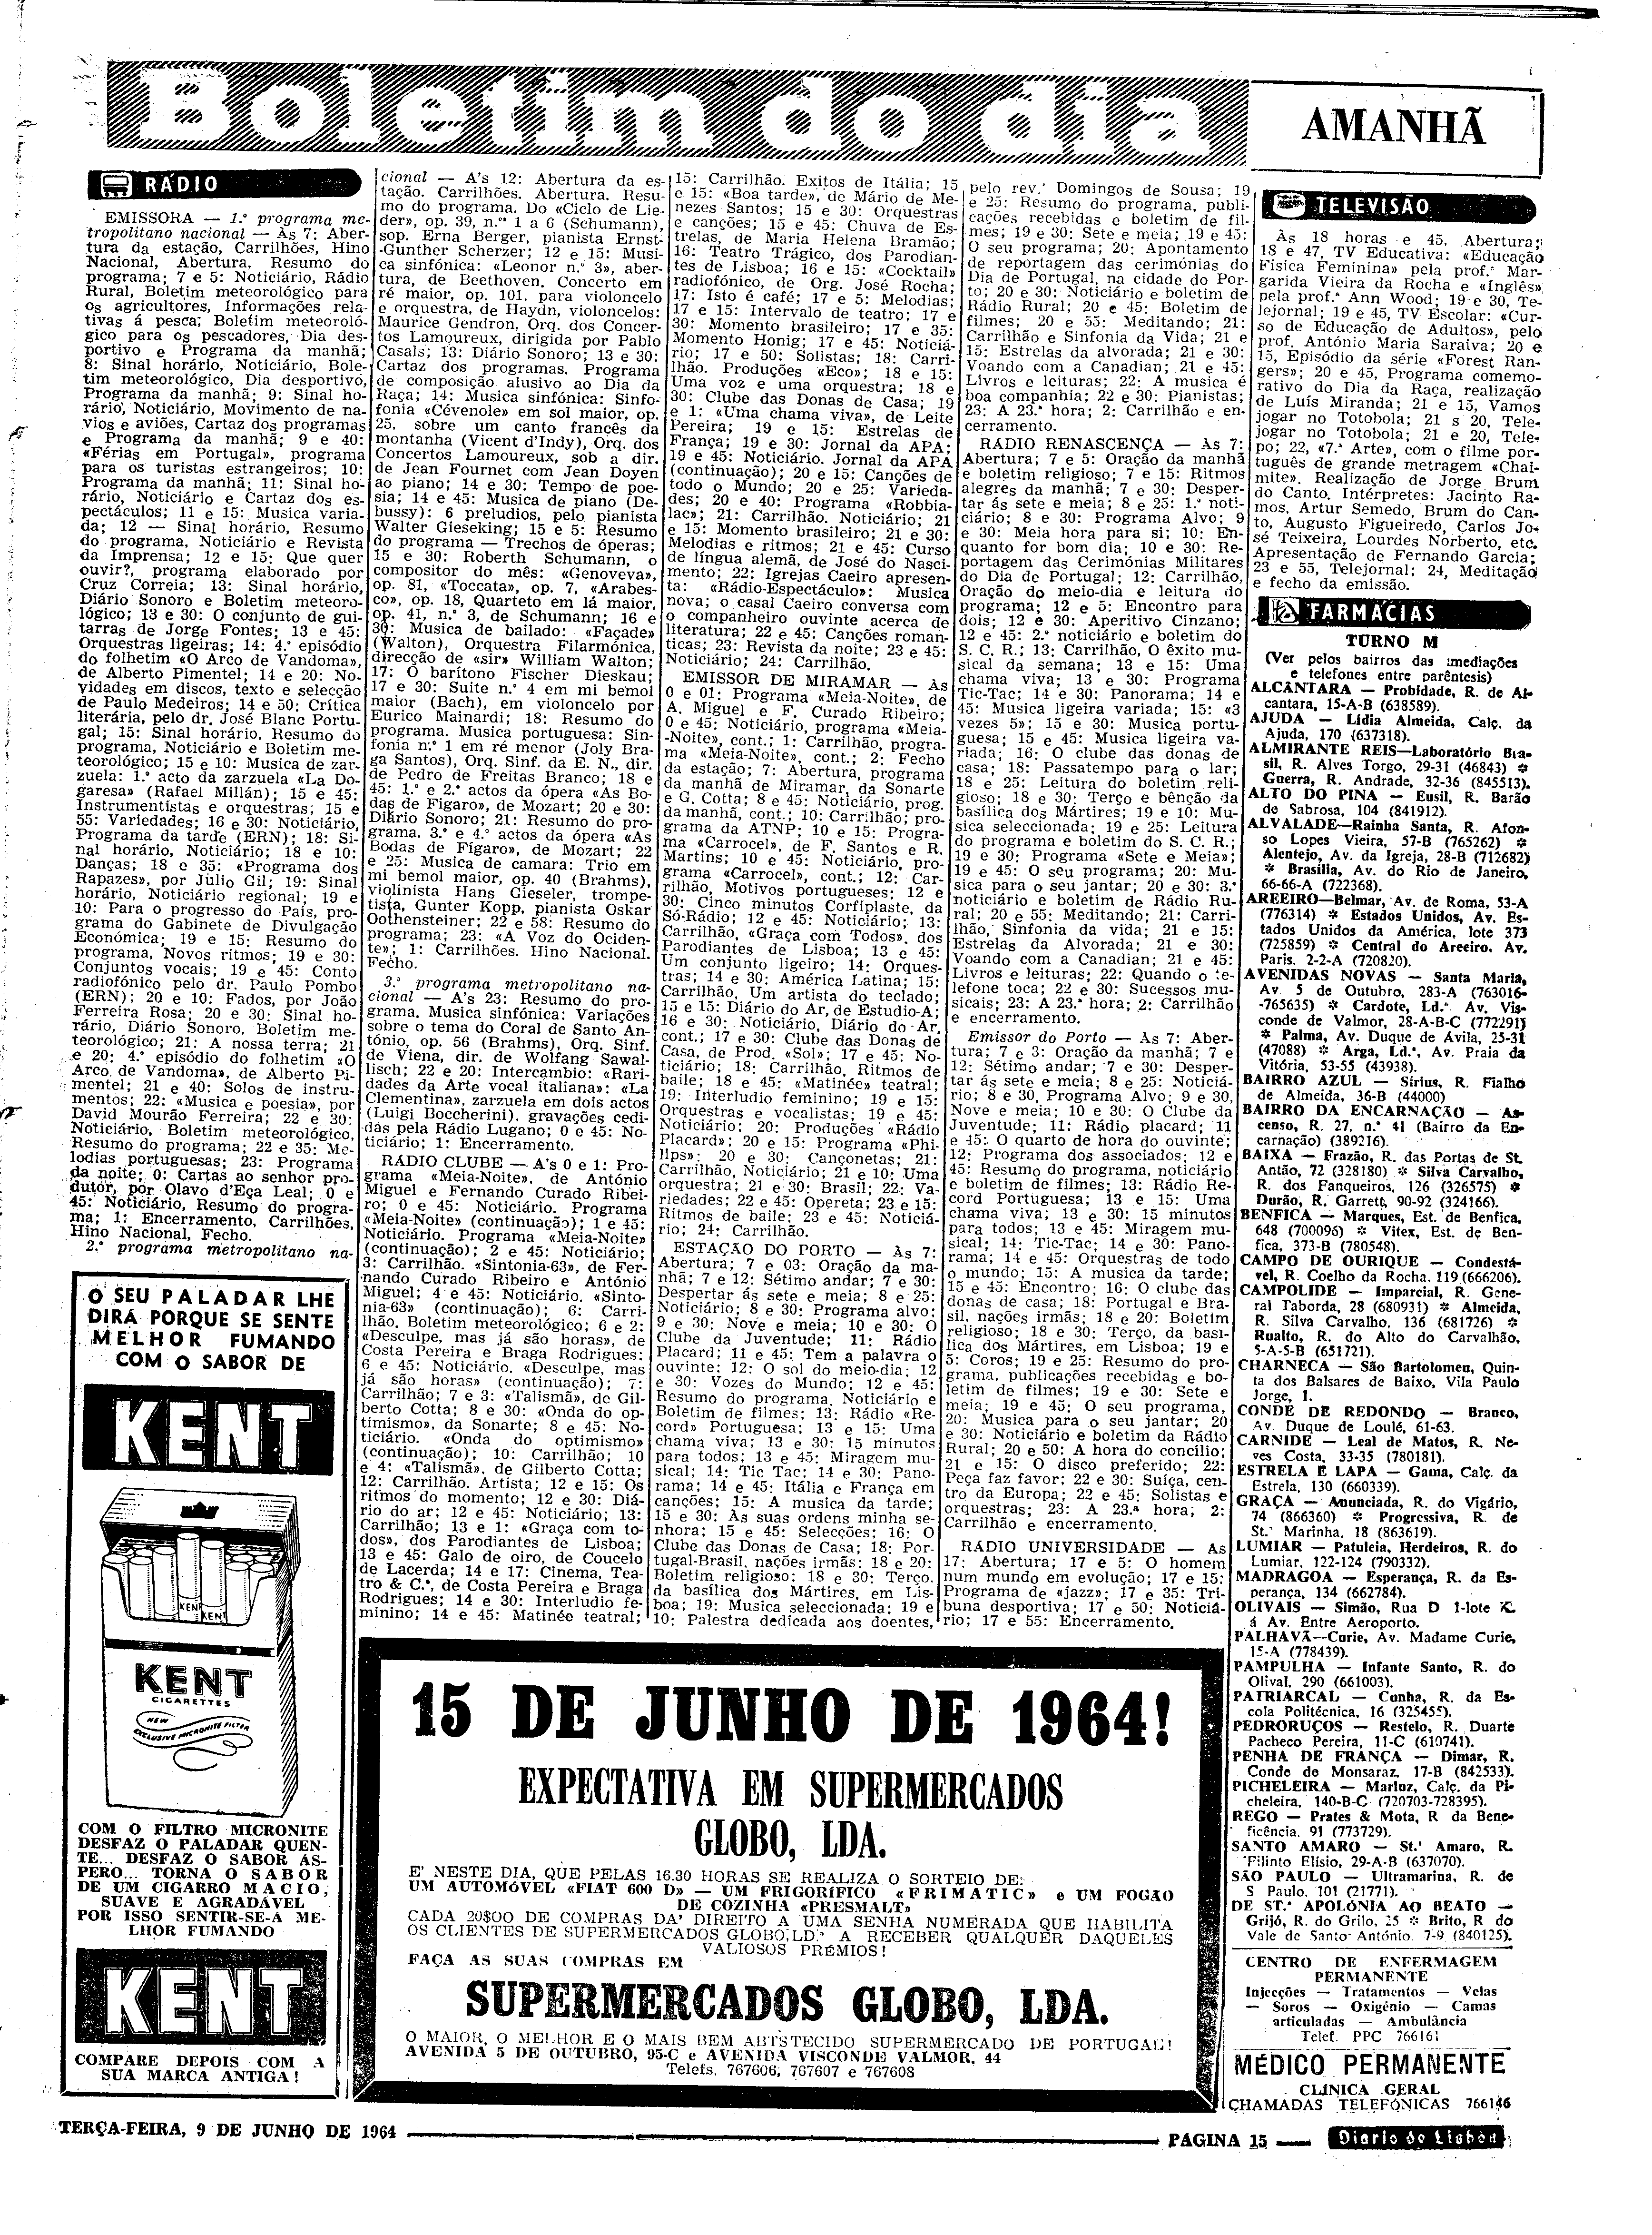 06554.092.18972- pag.15